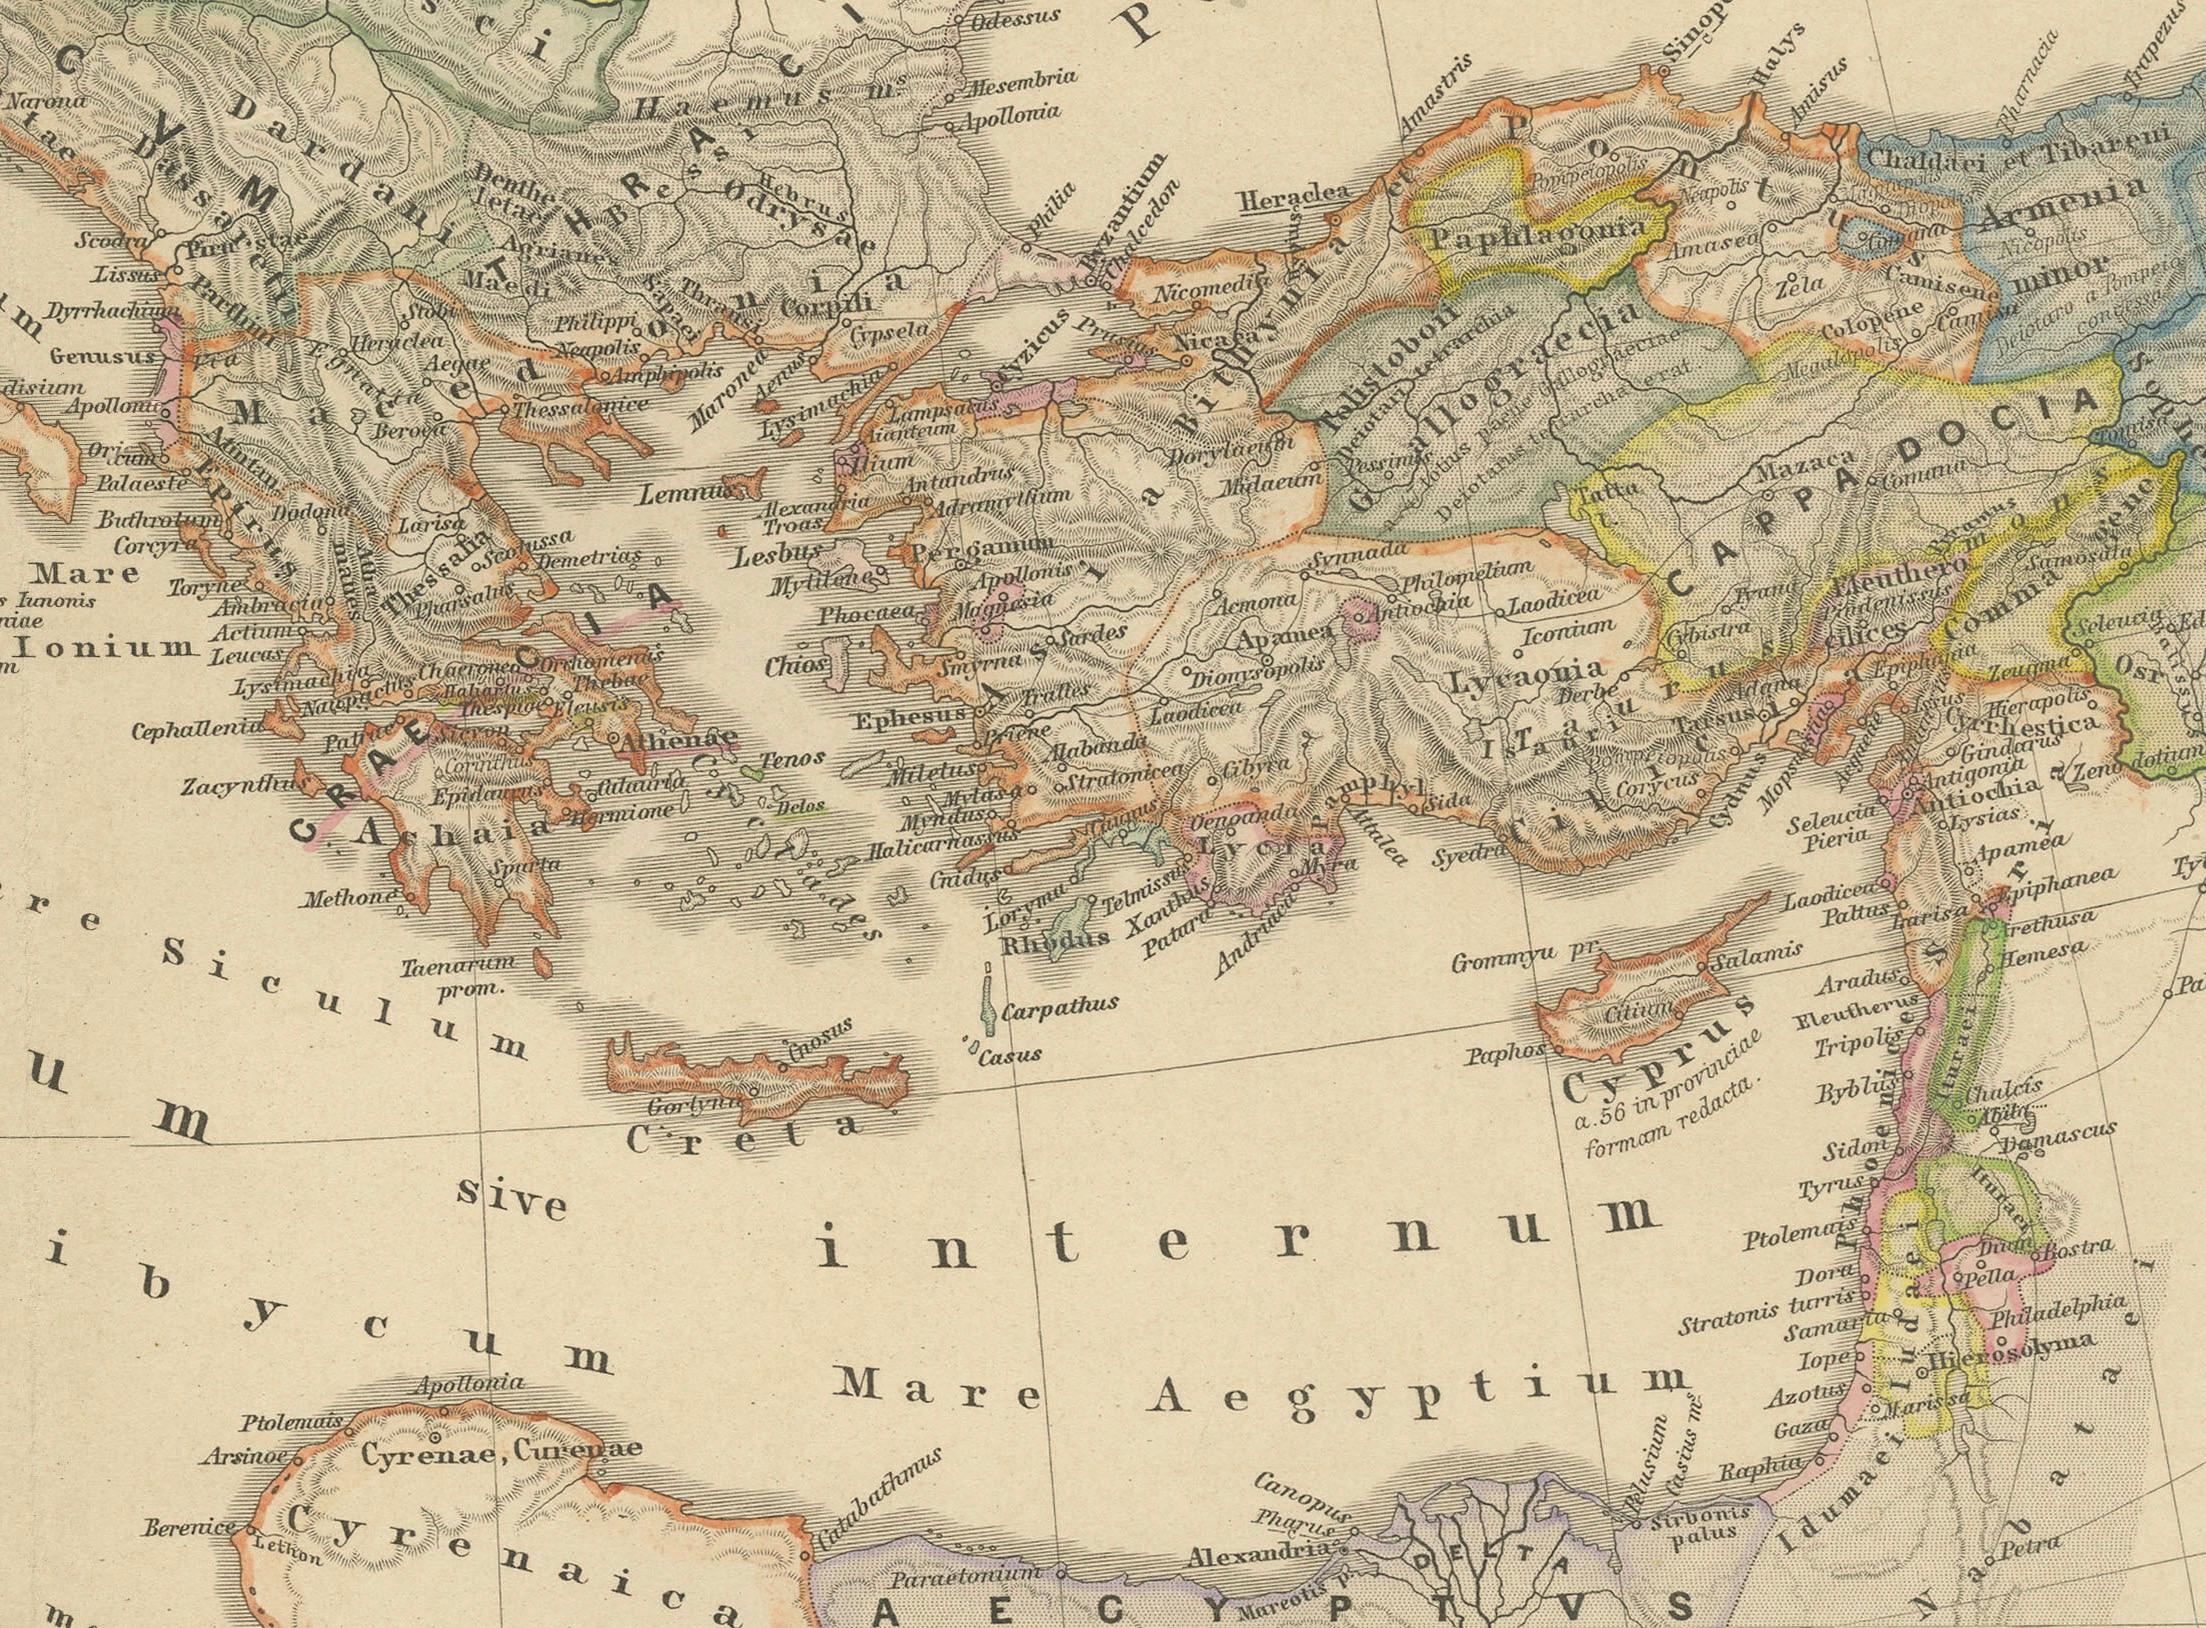 Es handelt sich um eine historische Karte, die den Mittelmeerraum während eines bestimmten Zeitraums der römischen Geschichte darstellt, von der Rückkehr Pompejus' des Großen nach seinem Feldzug in Kleinasien bis zur Schlacht von Actium, einer